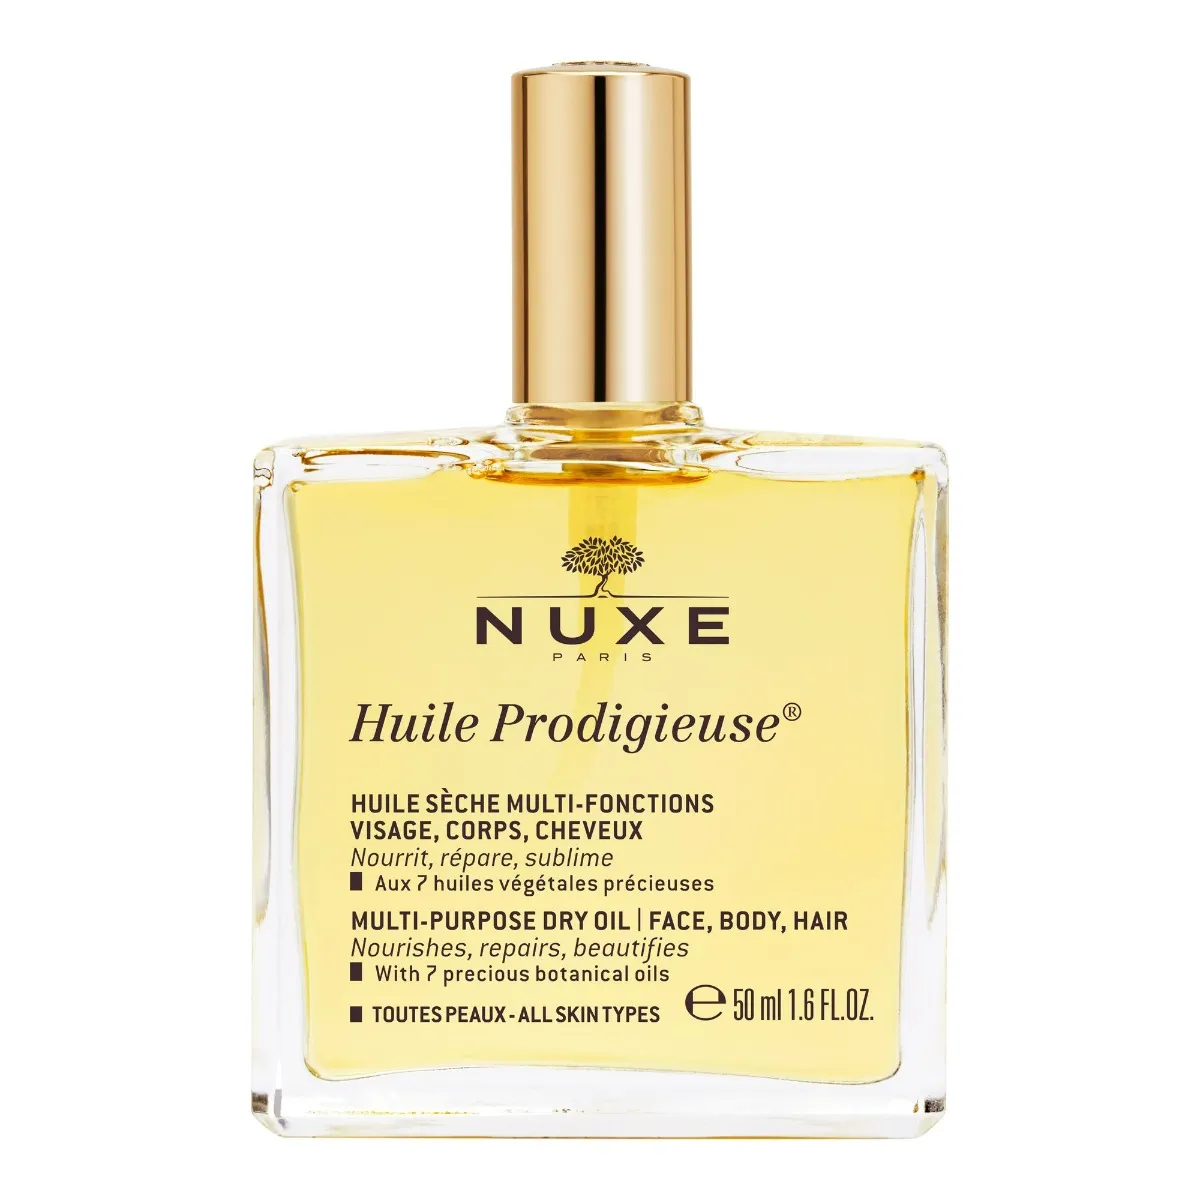 Nuxe Huile Prodigieuse Suchy olejek do ciała, twarzy i włosów, 50 ml